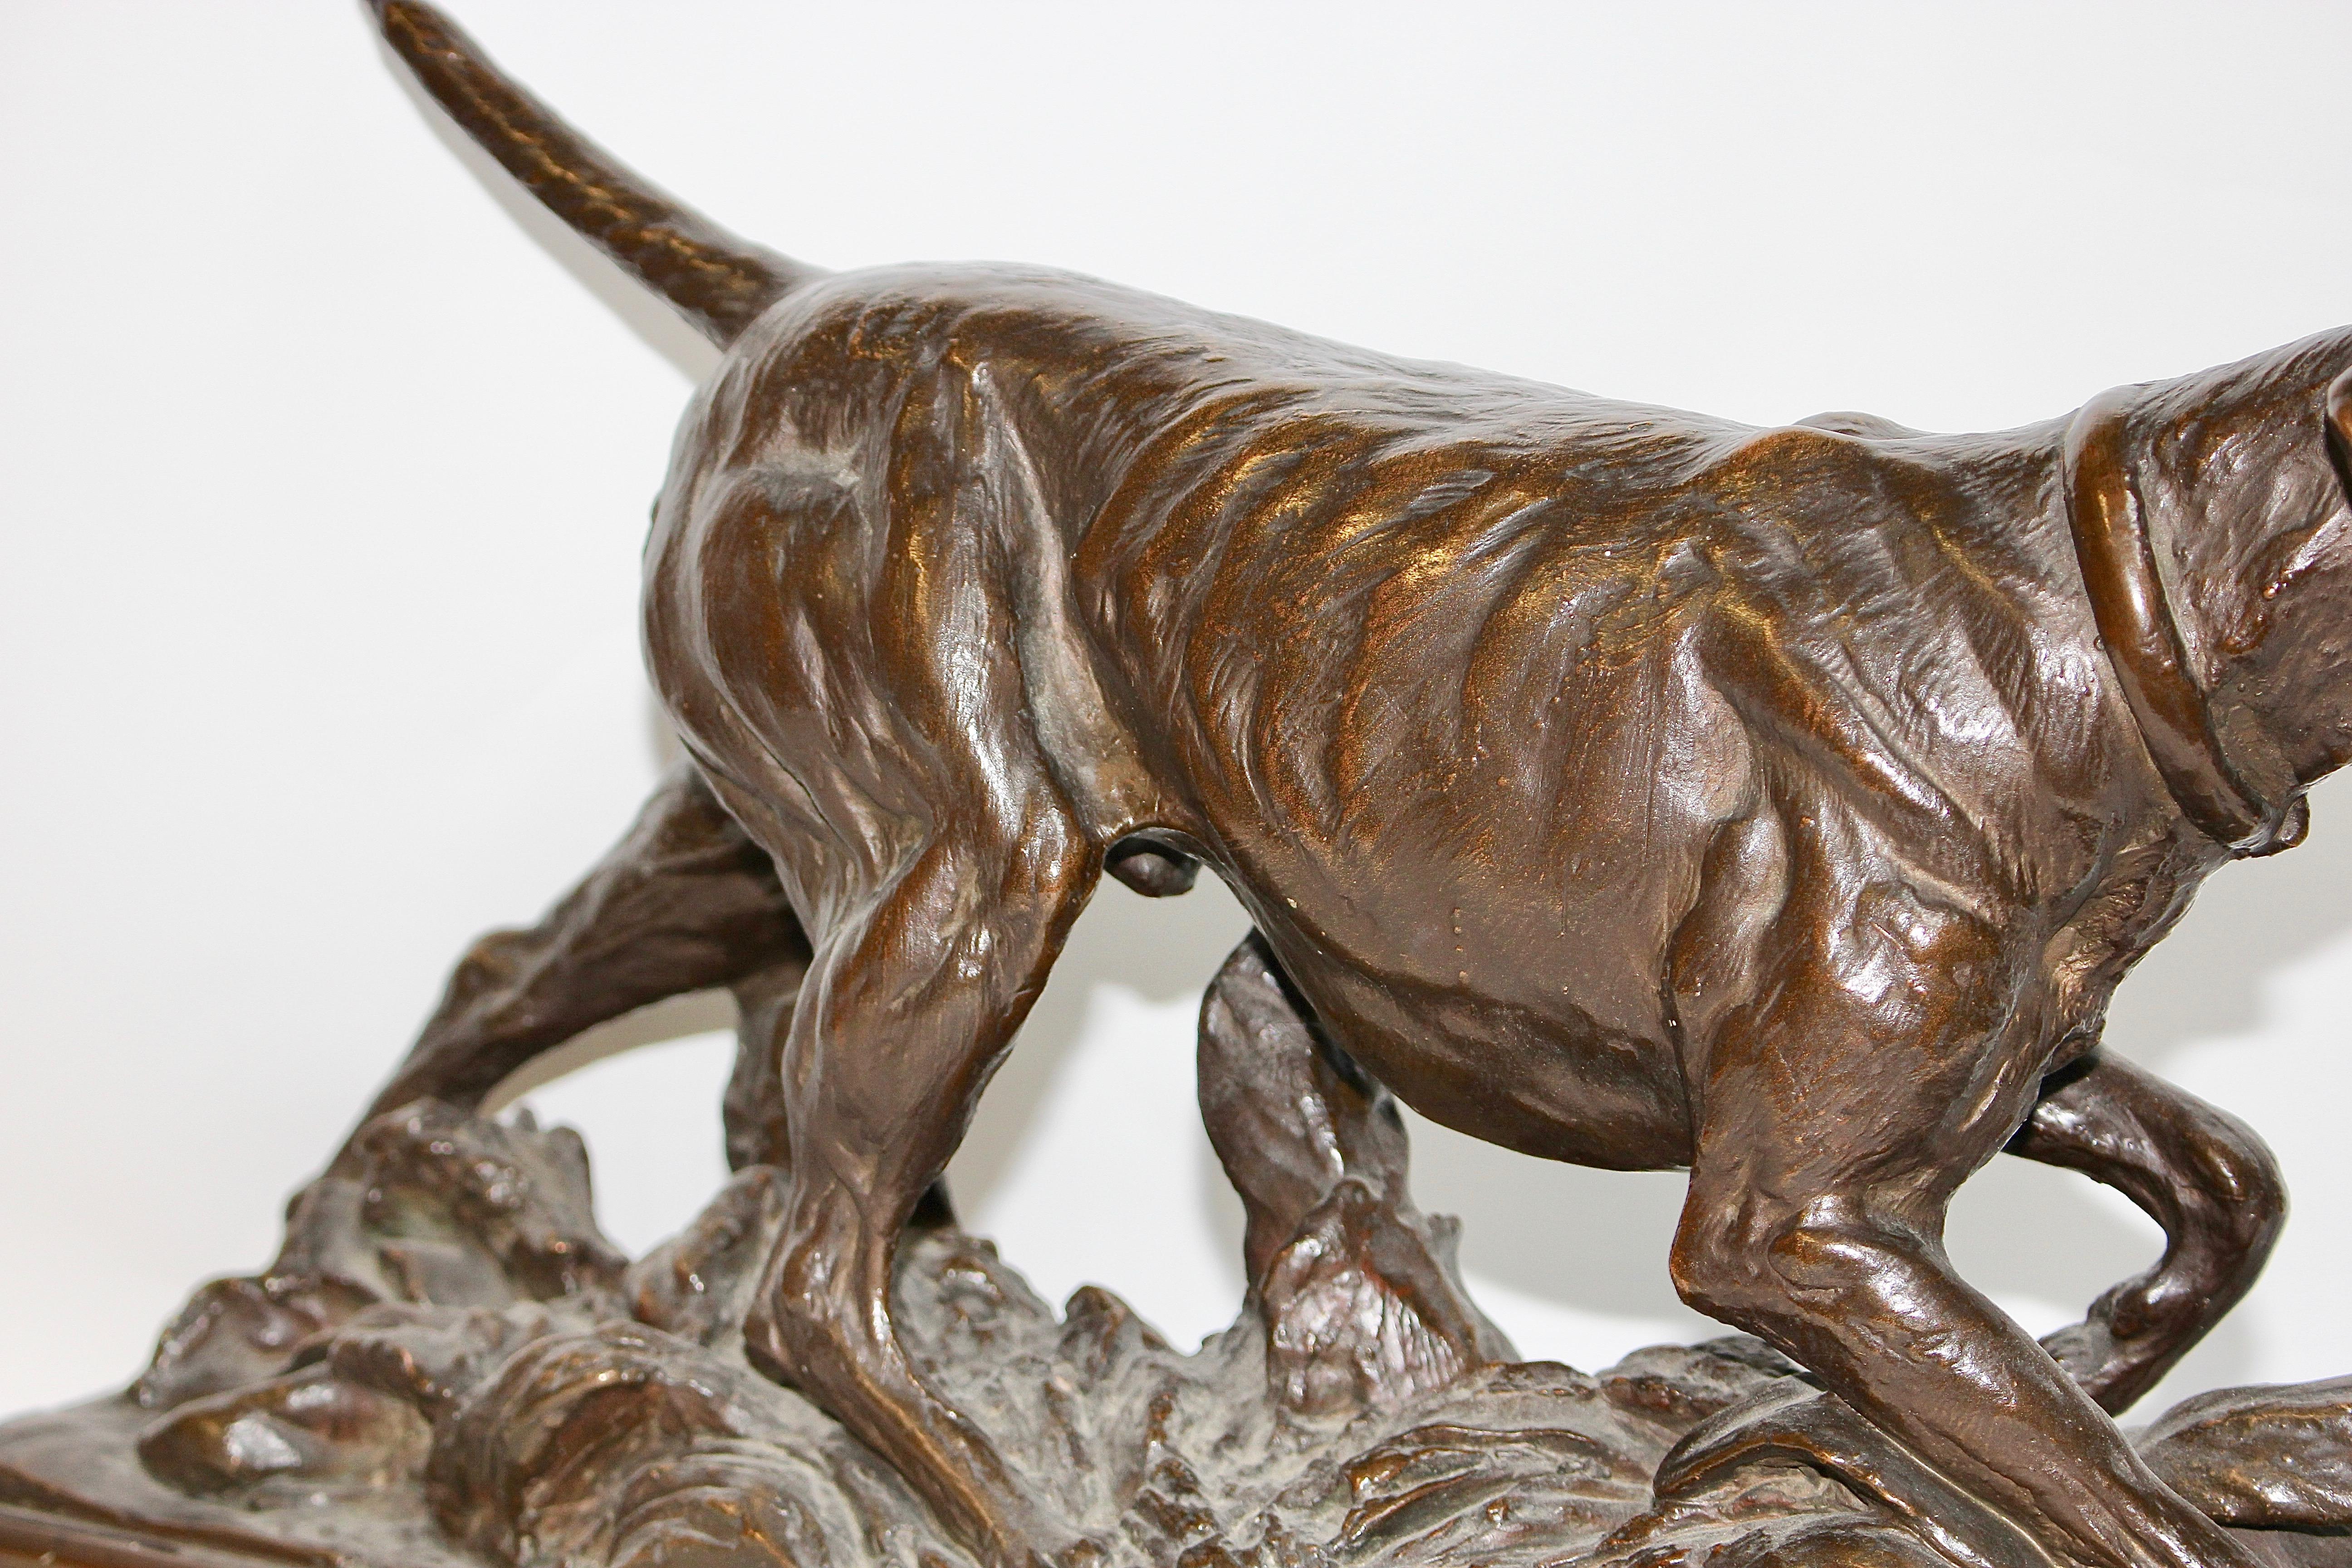 Antique Bronze Sculpture, Walking Hound, Gundog, Signed 